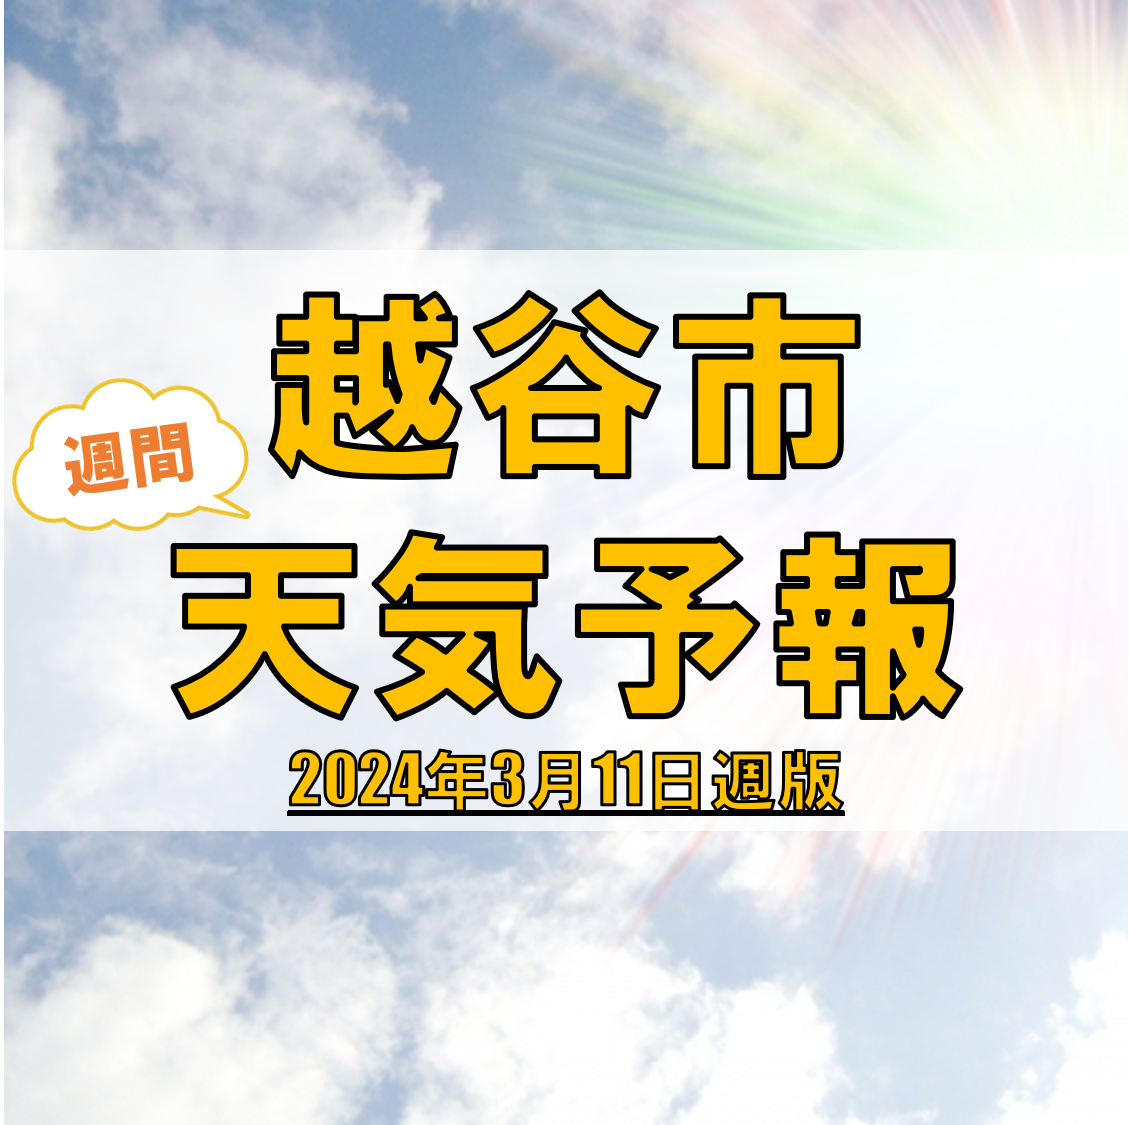 越谷市の天気 週間予報【2024年3月11日週】